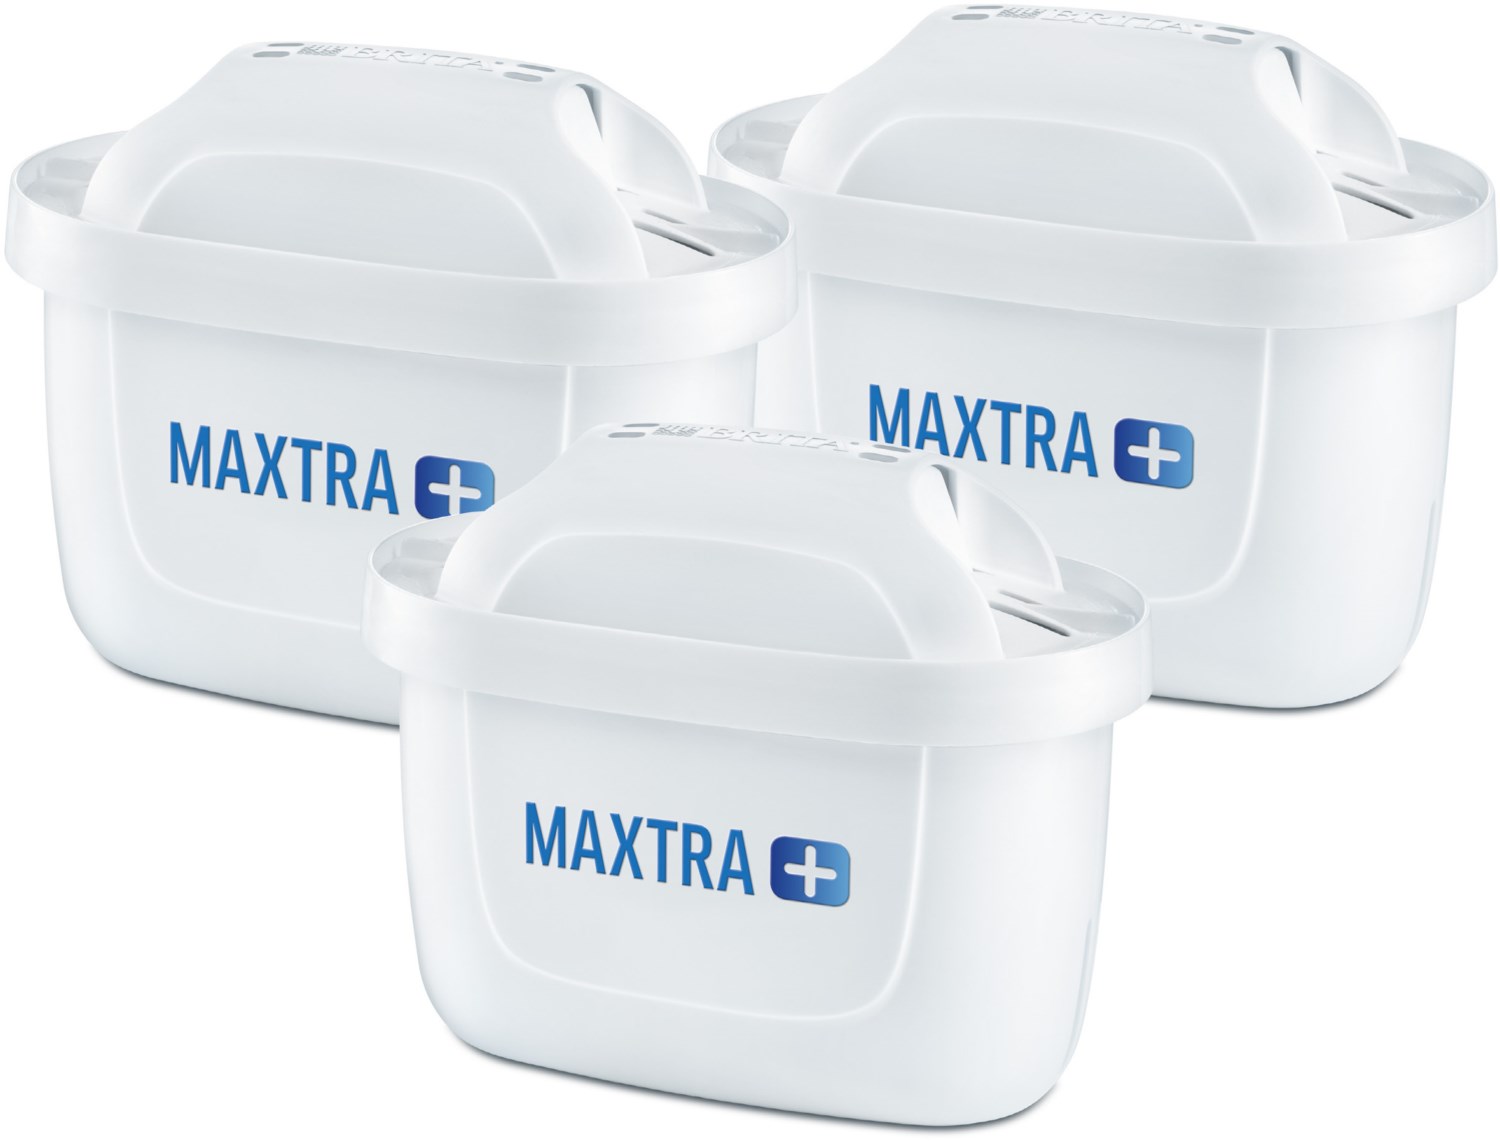 Brita Filterkartuschen Maxtra+ 12er Set - 12x Kartuschen Jahrespack Maxtra Plus